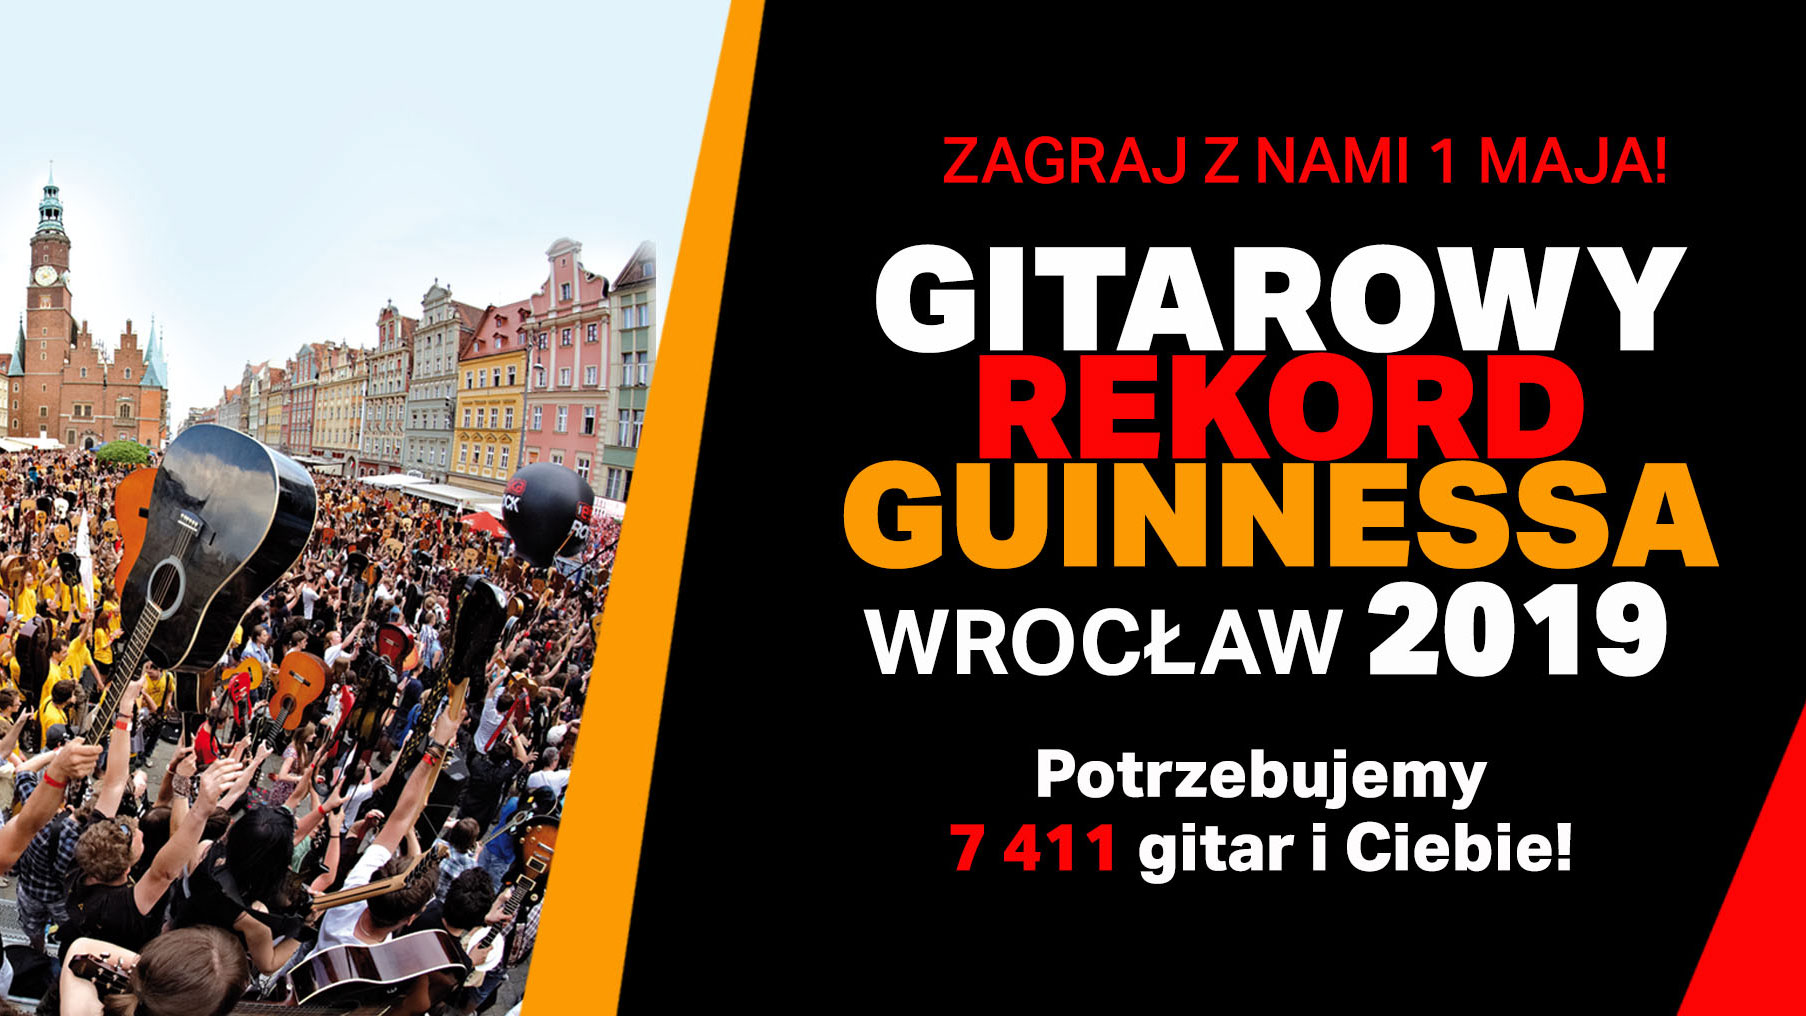 Gitarowy Rekord Guinnessa 2019 Juz 1 Maja We Wroclawiu Uptone Pl